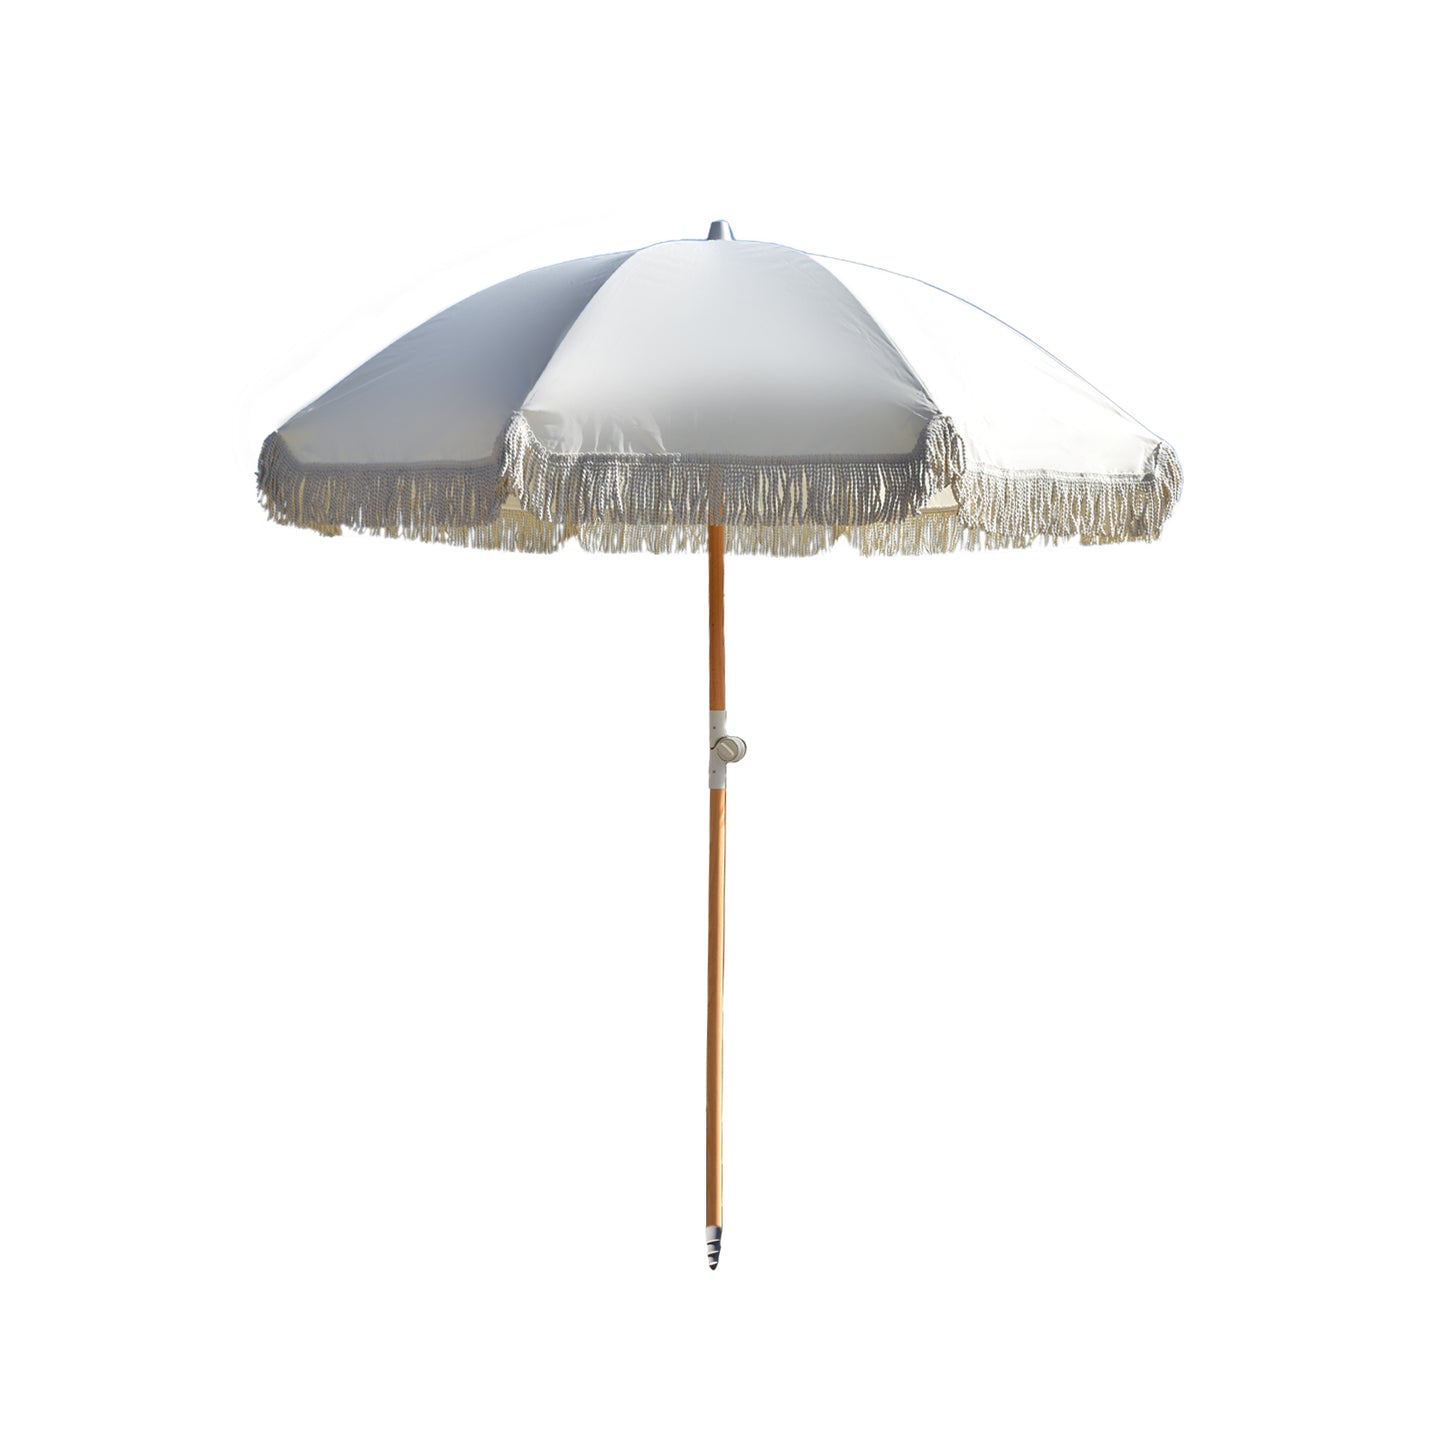 Greige Retro Beach Umbrella 2m (UPF 50+)